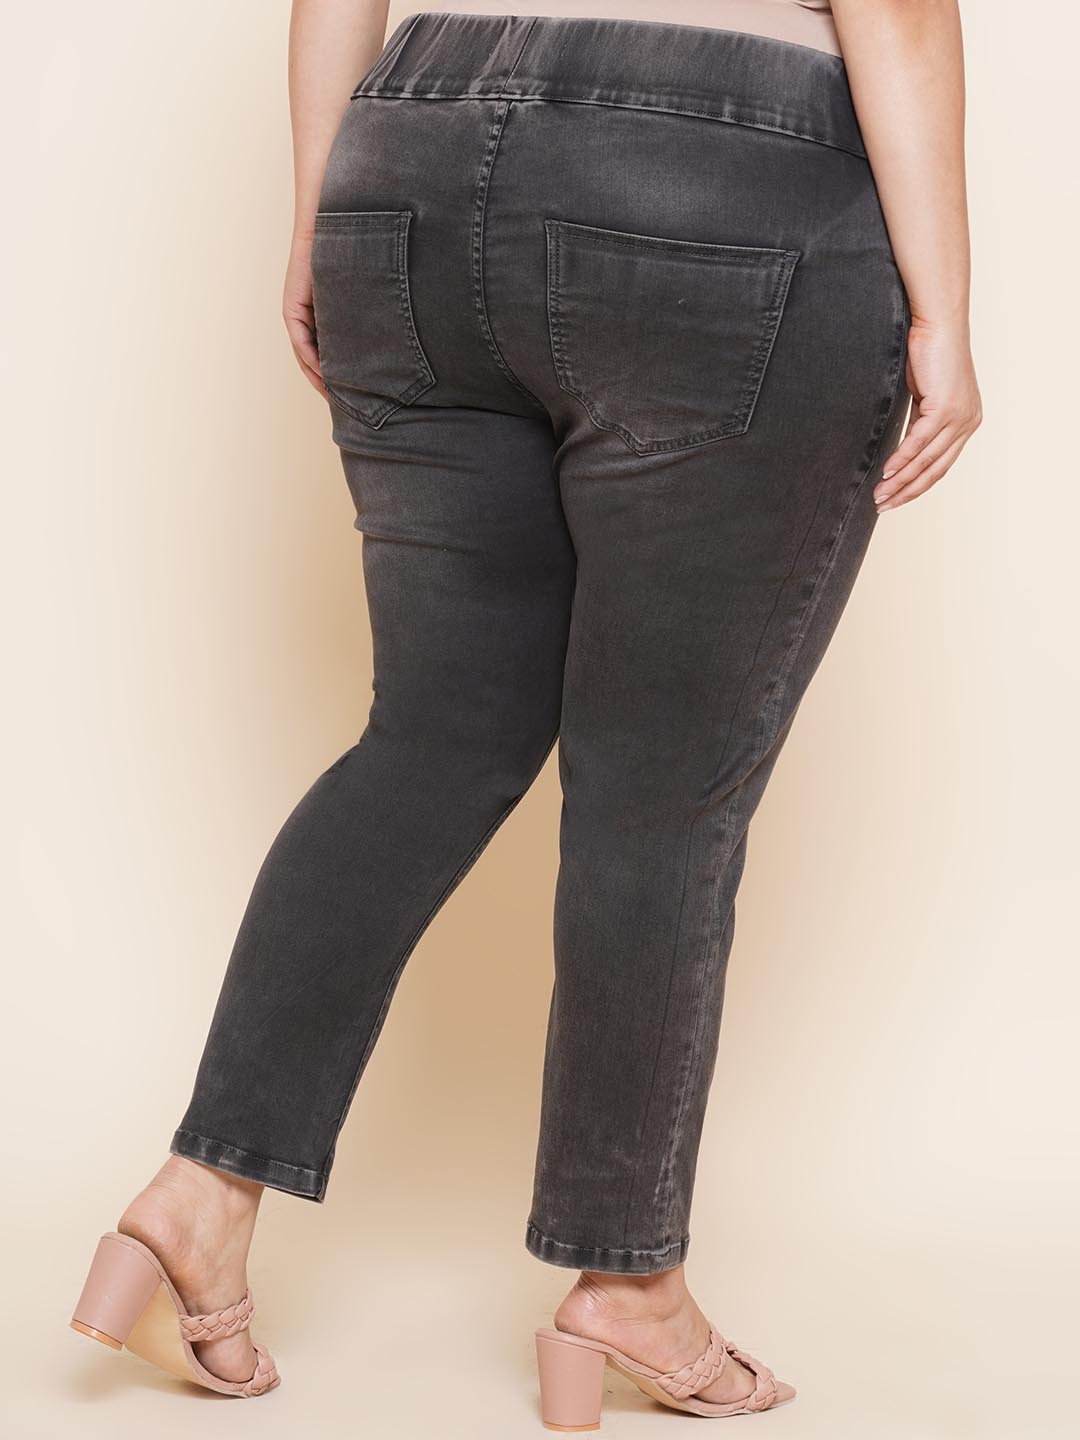 bottomwear_kiaahvi/jeans/KIJ6004/kij6004-5.jpg